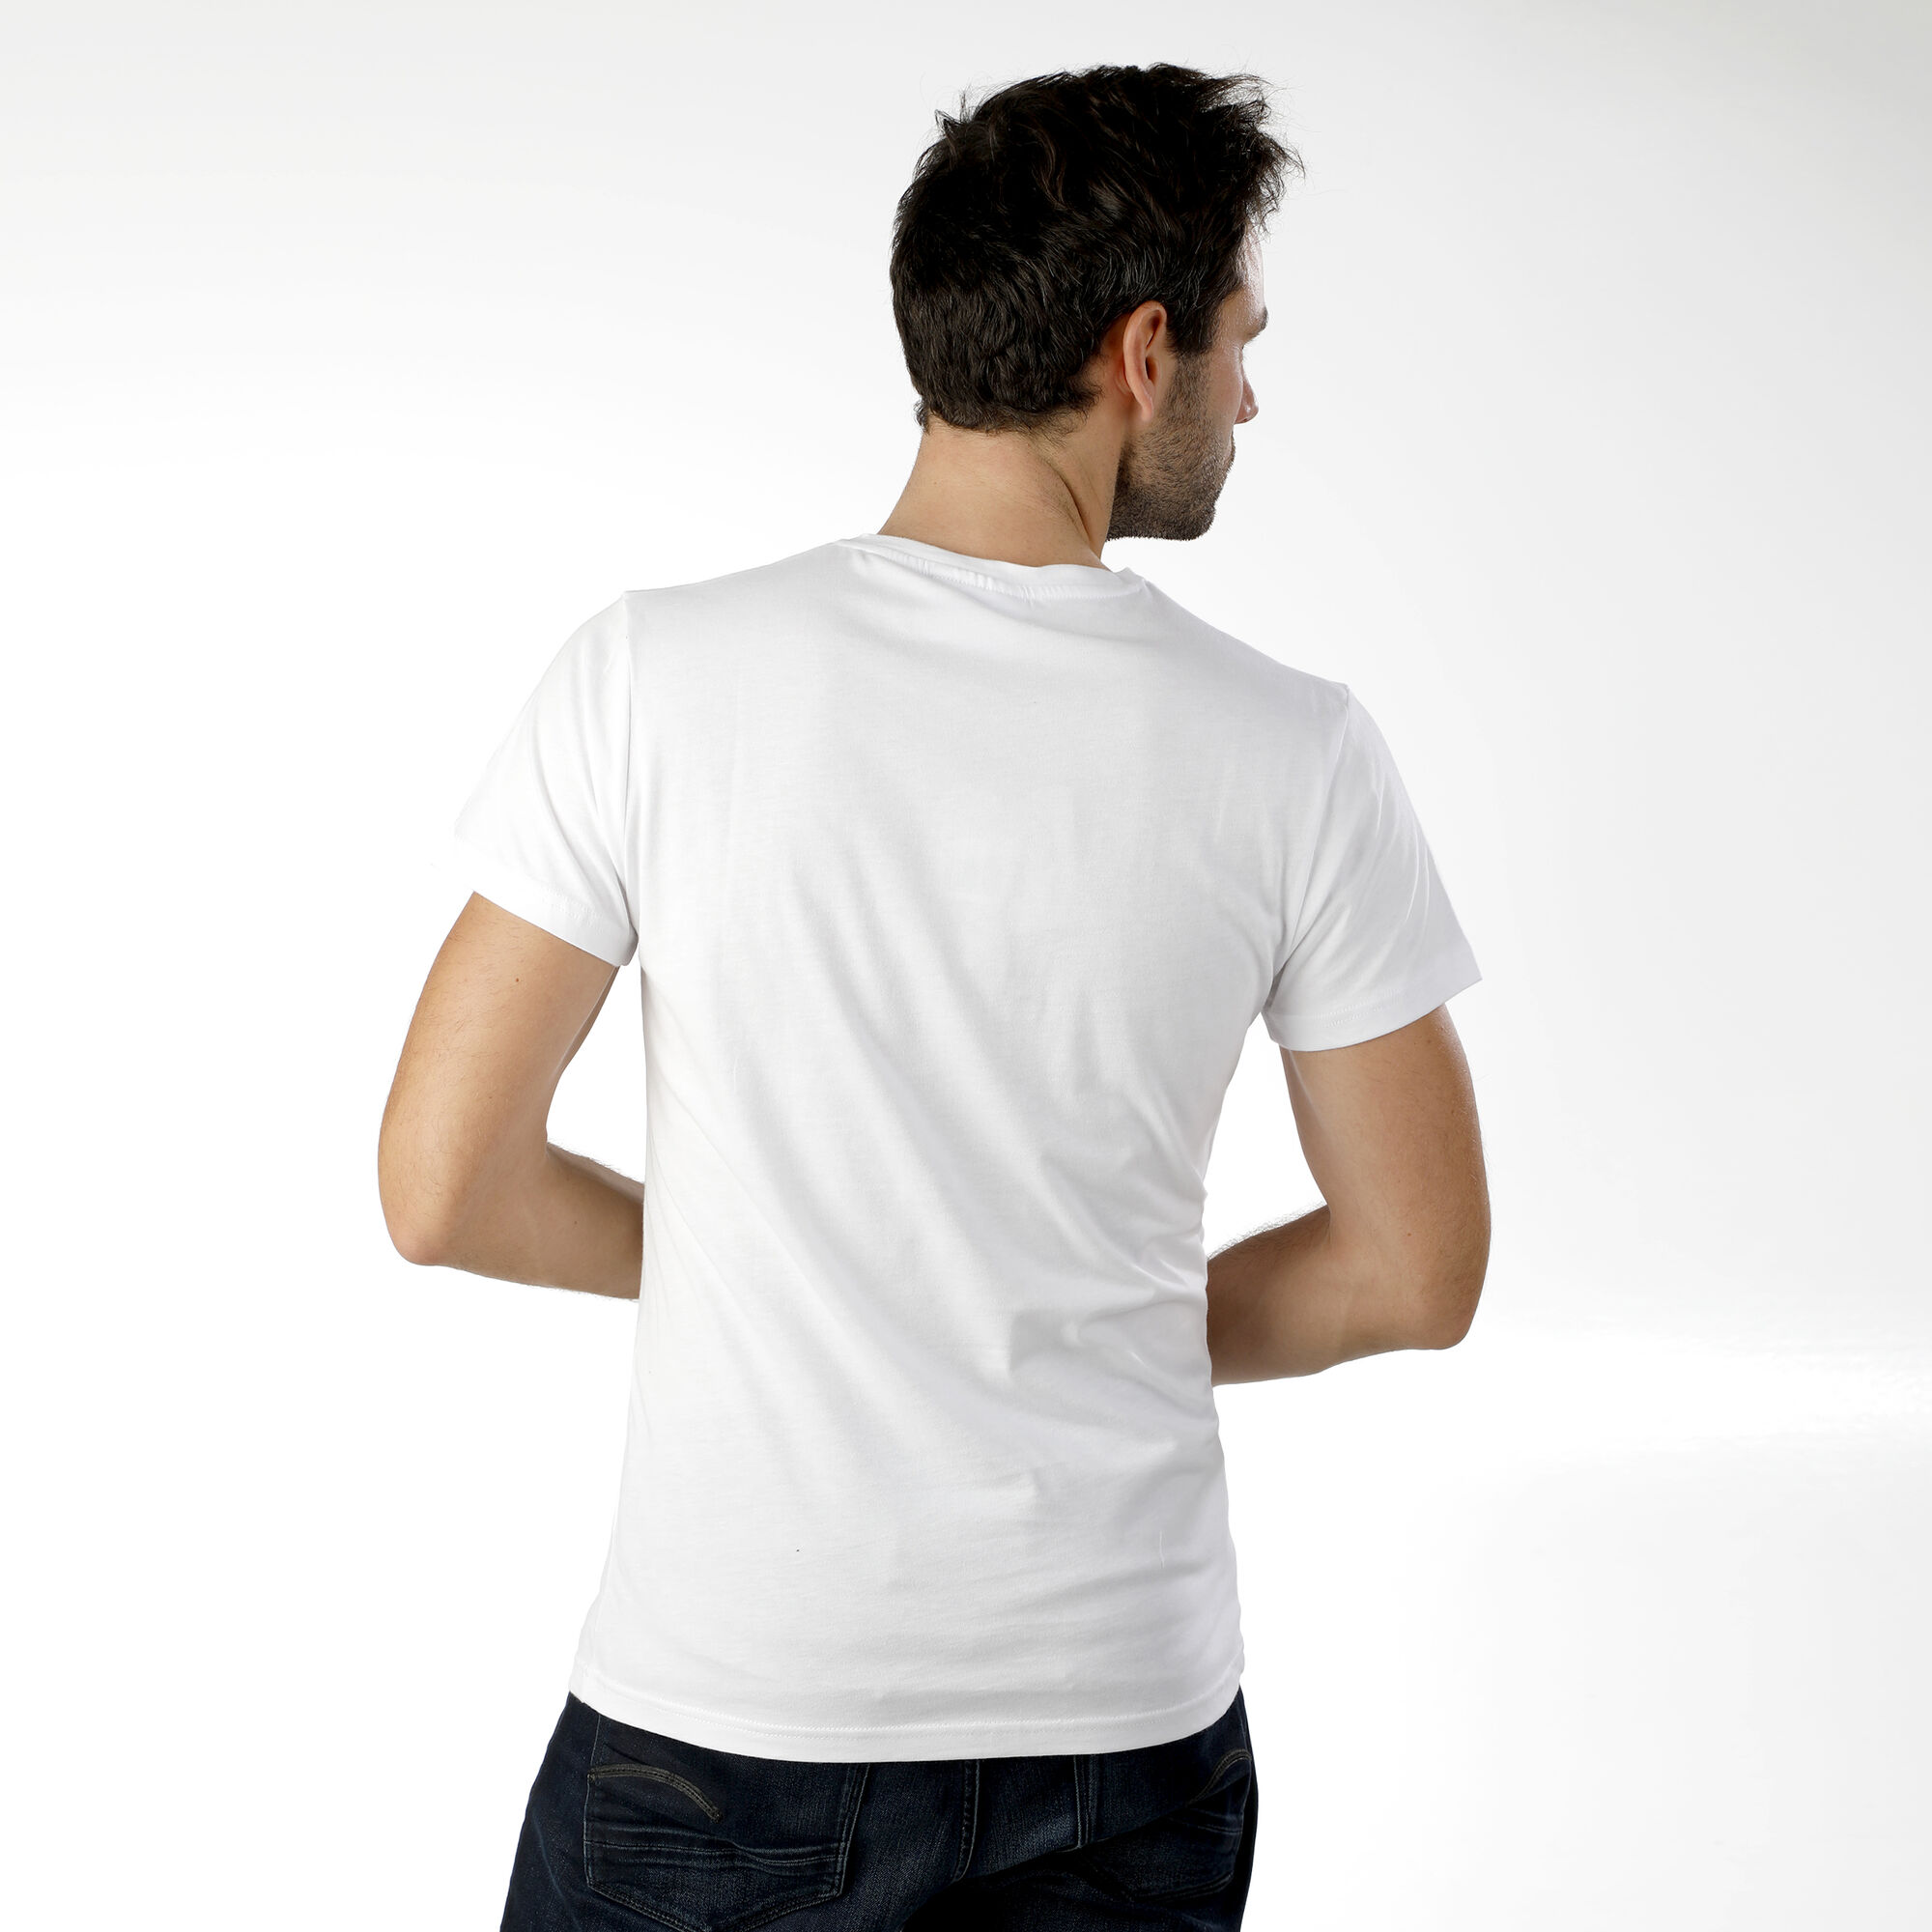 Ente, Quietscheente, Badeente, Popart Ente' Men's Premium T-Shirt